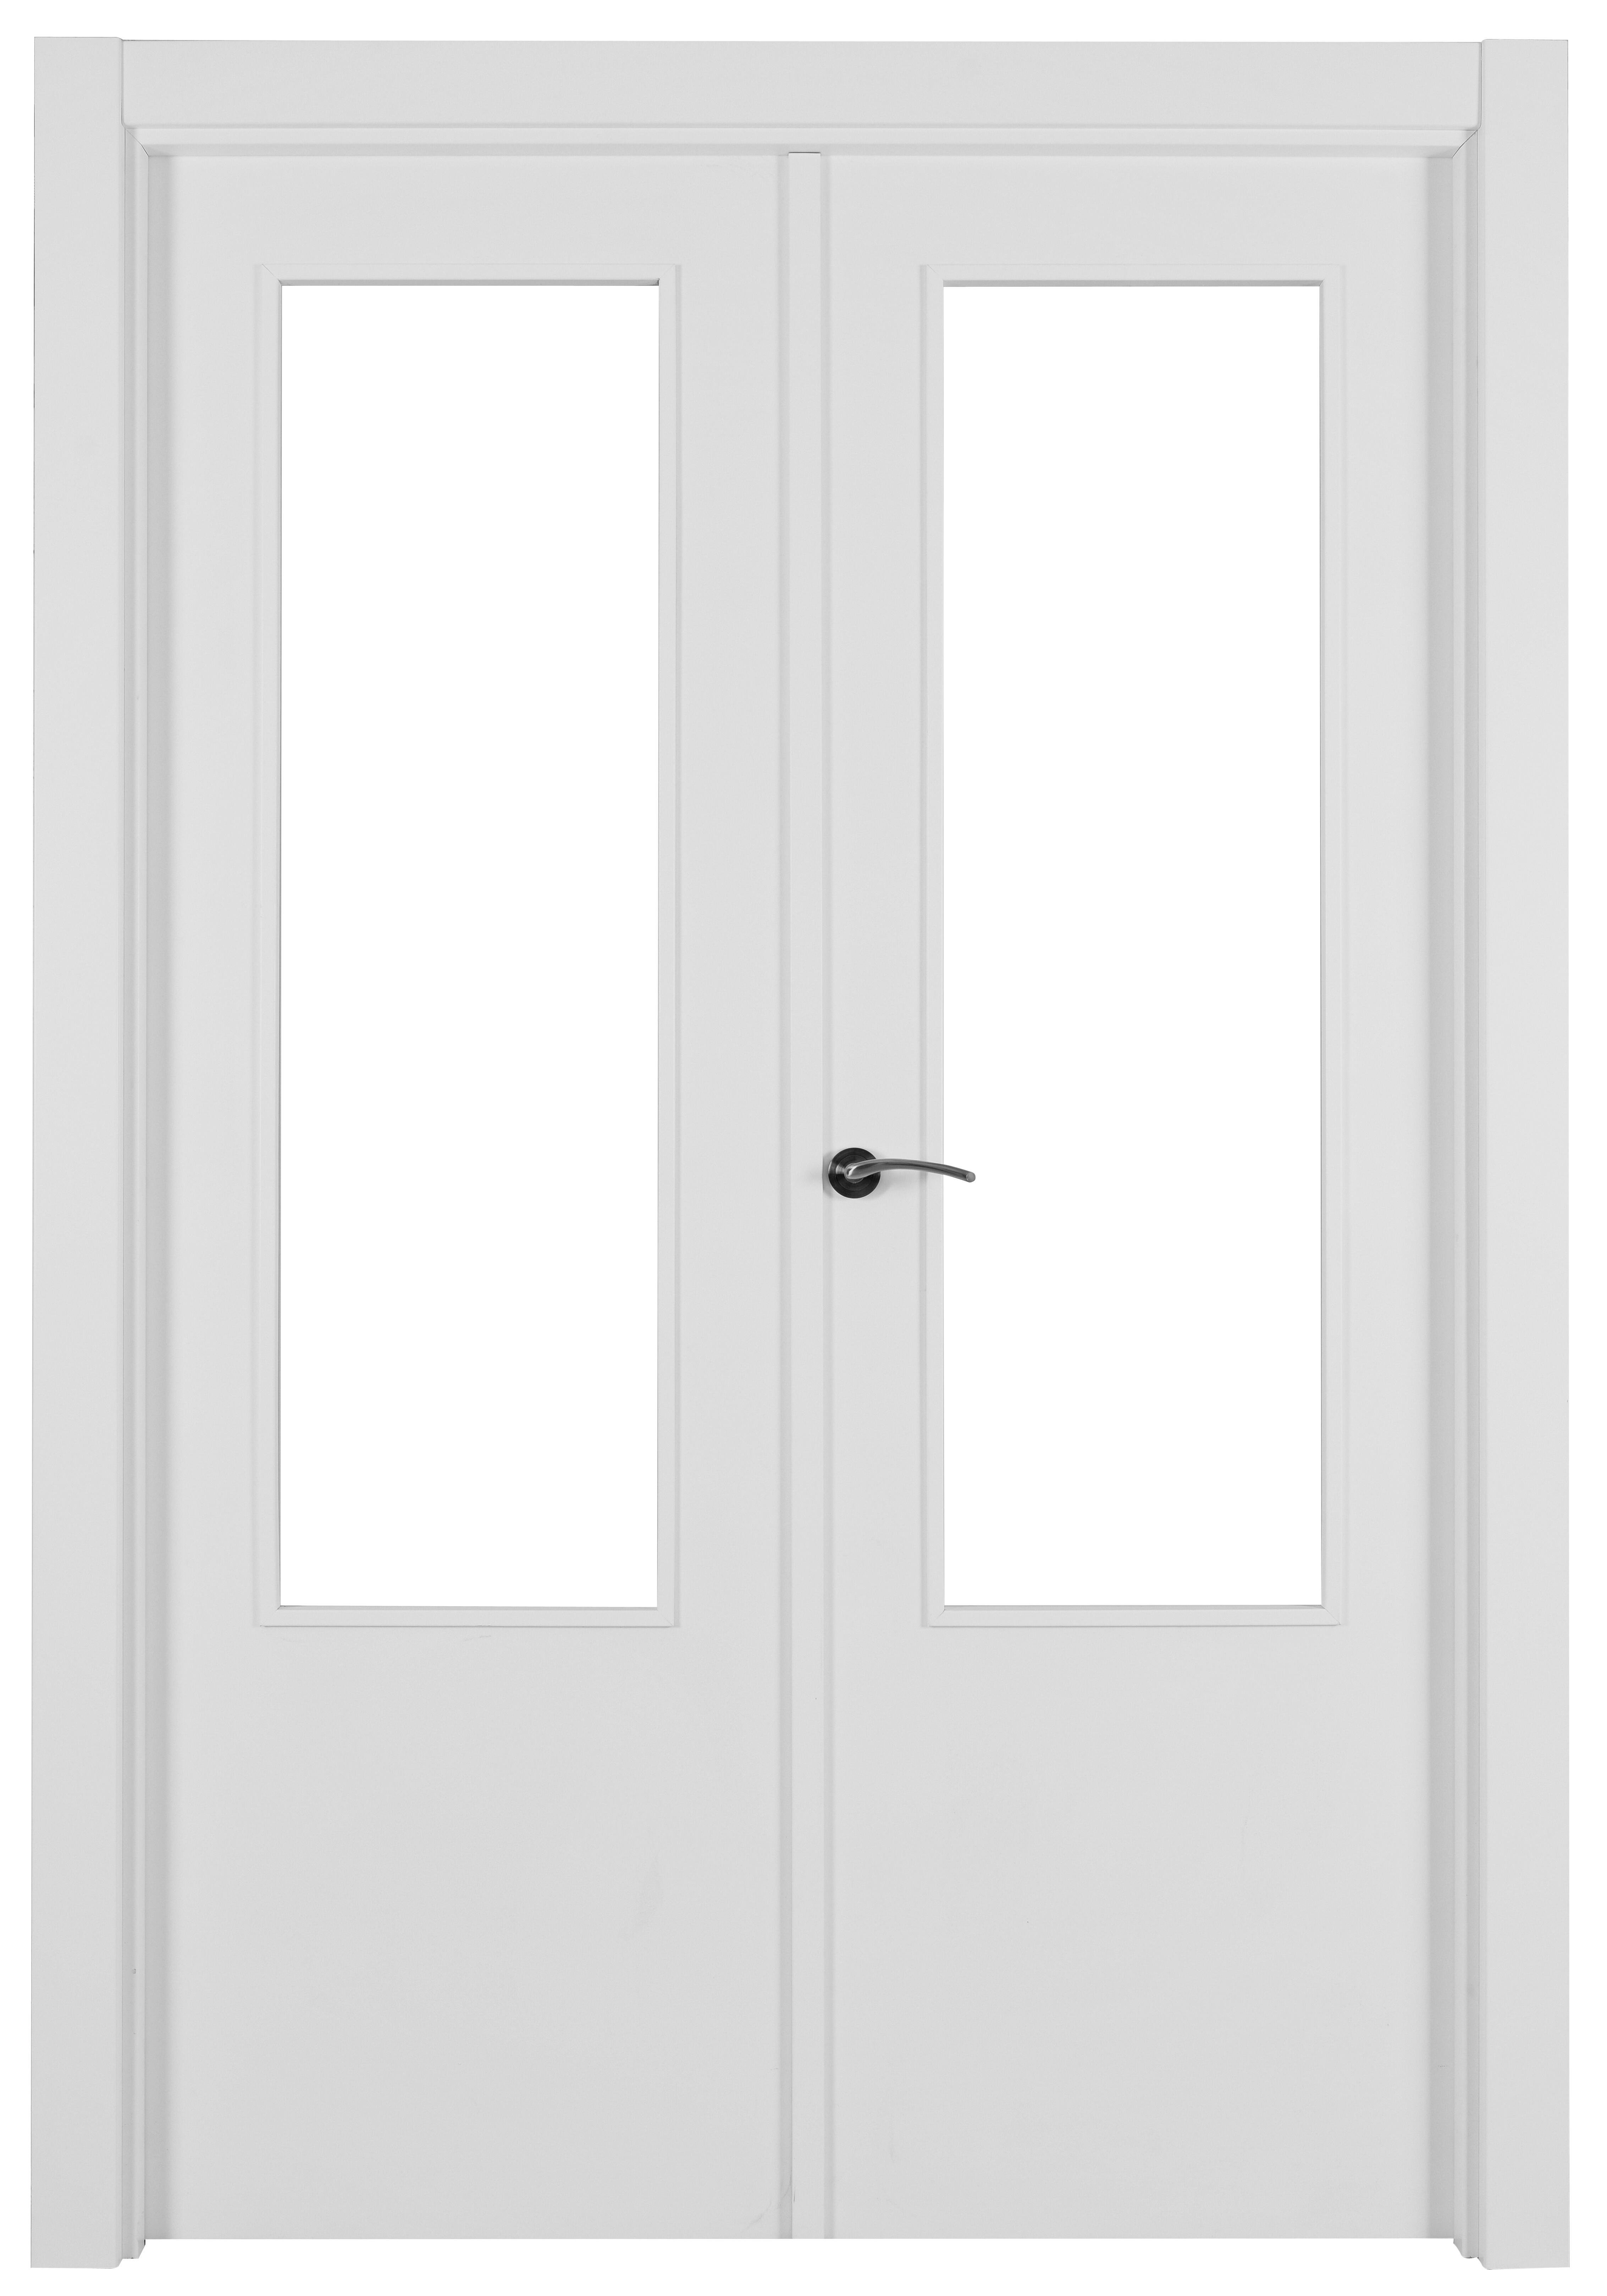 Puerta abatible lyon blanca aero blanco derecha con cristal de 110x30 y 115cm